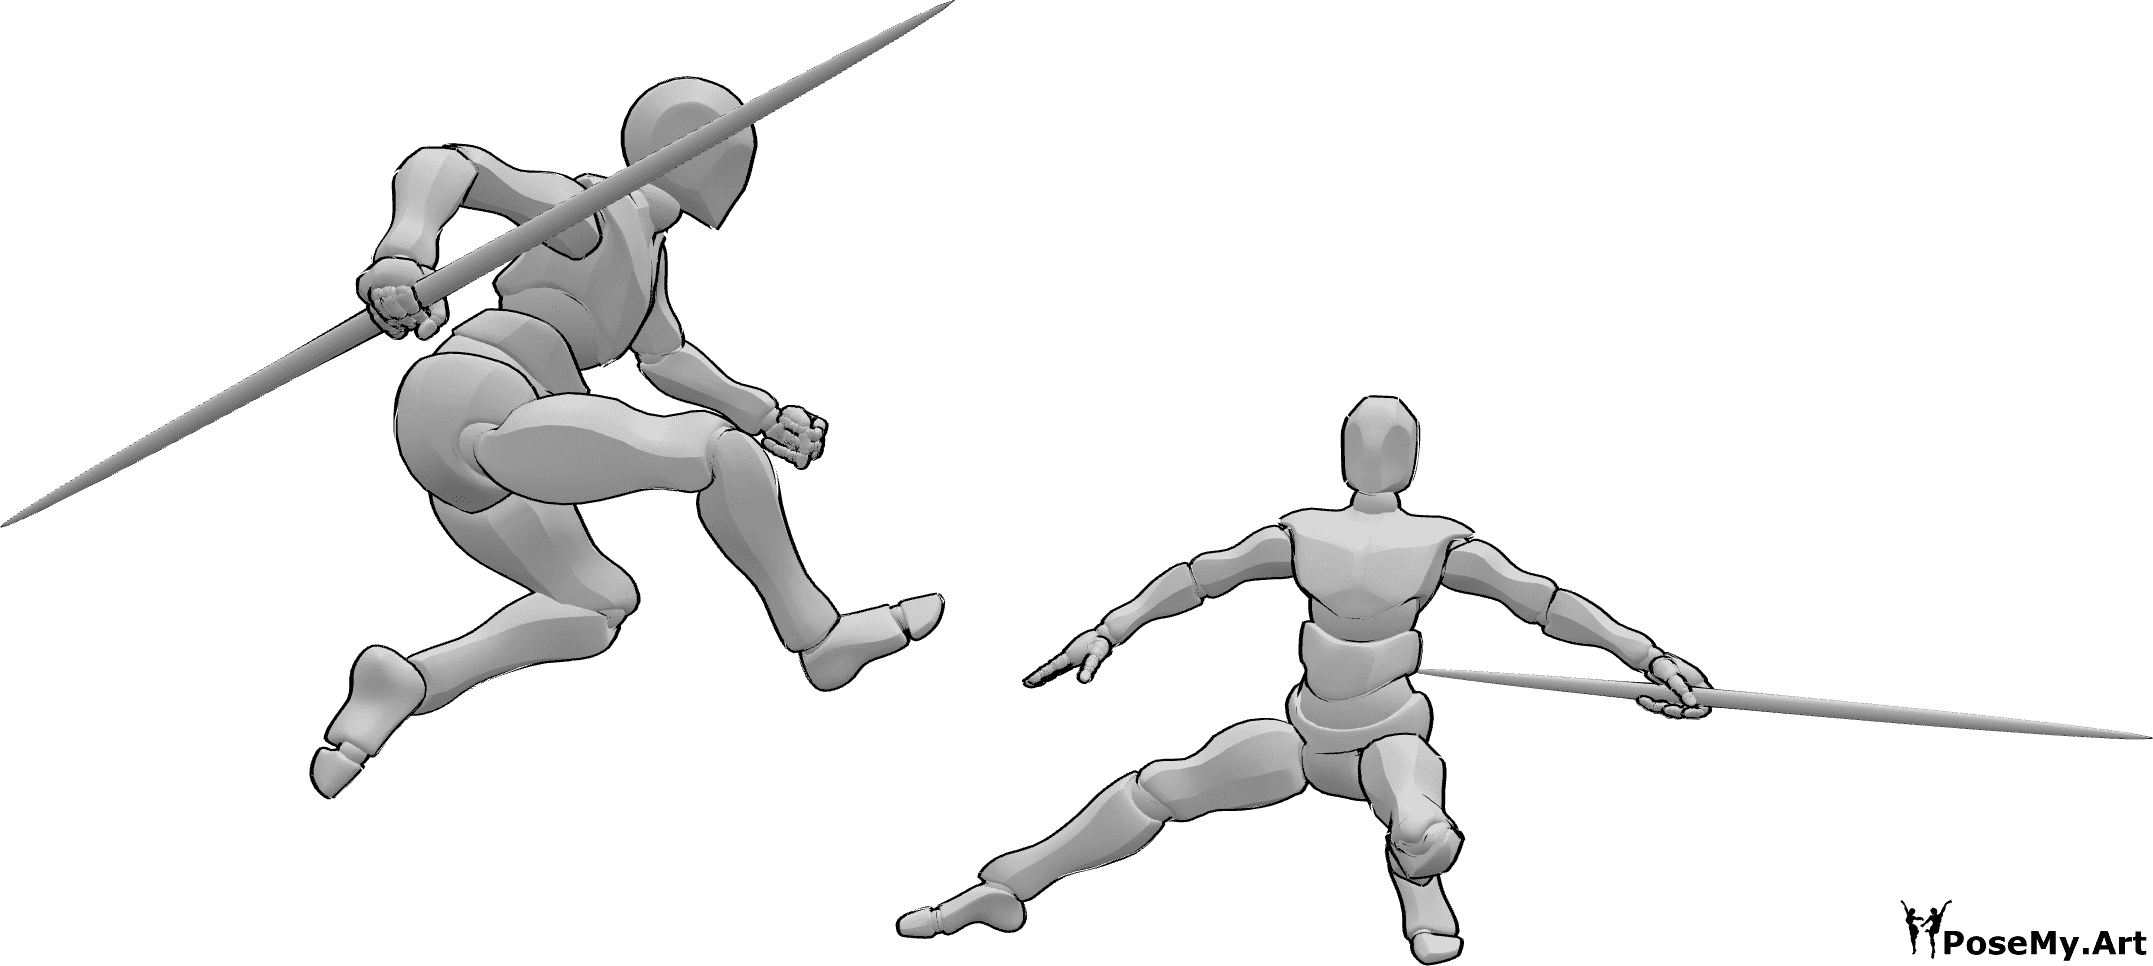 Riferimento alle pose- I bastoni da combattimento saltano in posa - Due maschi stanno lottando con i bastoni, uno di loro salta la posa